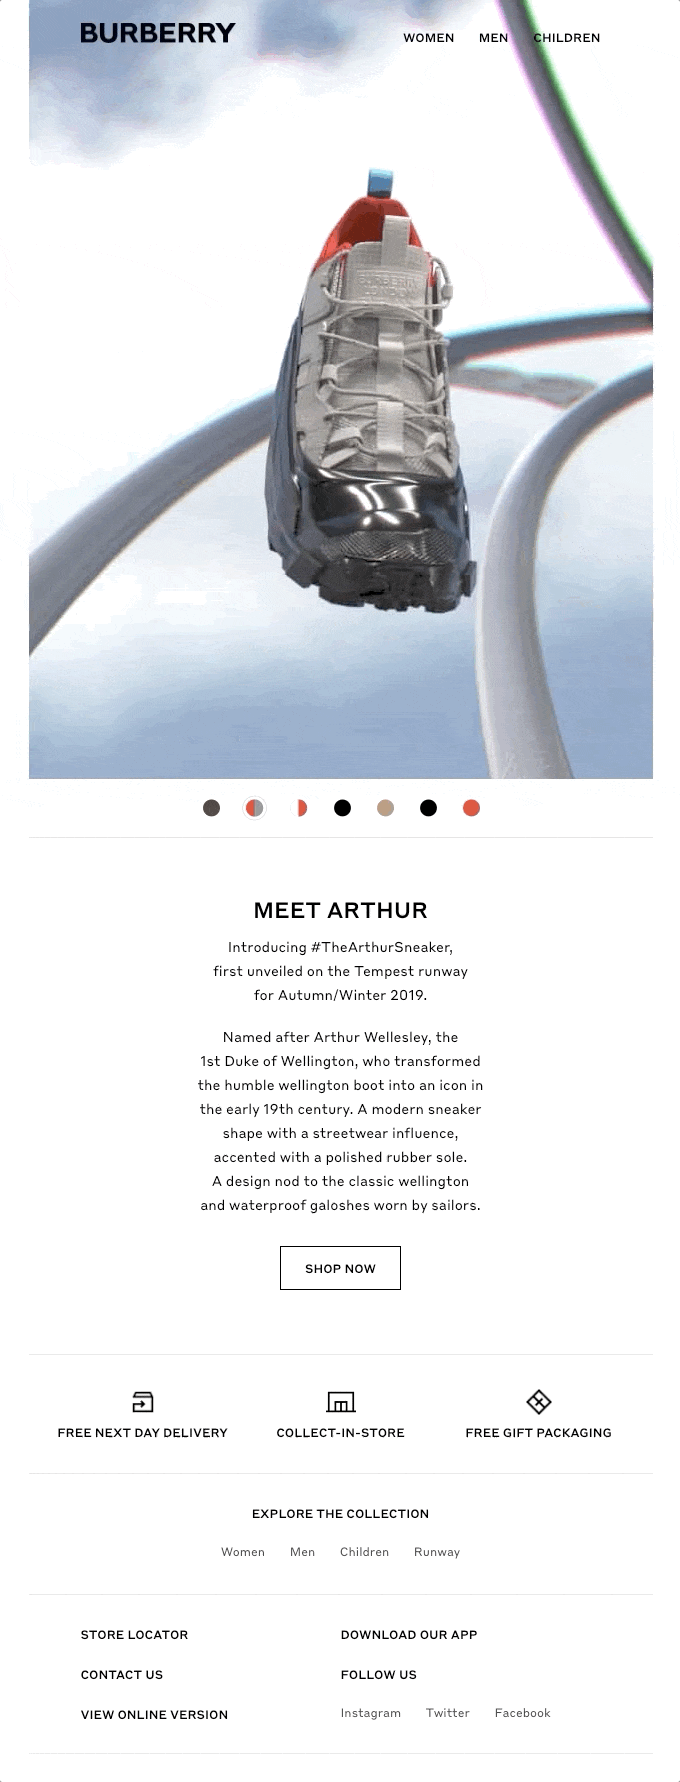 Meet Arthur